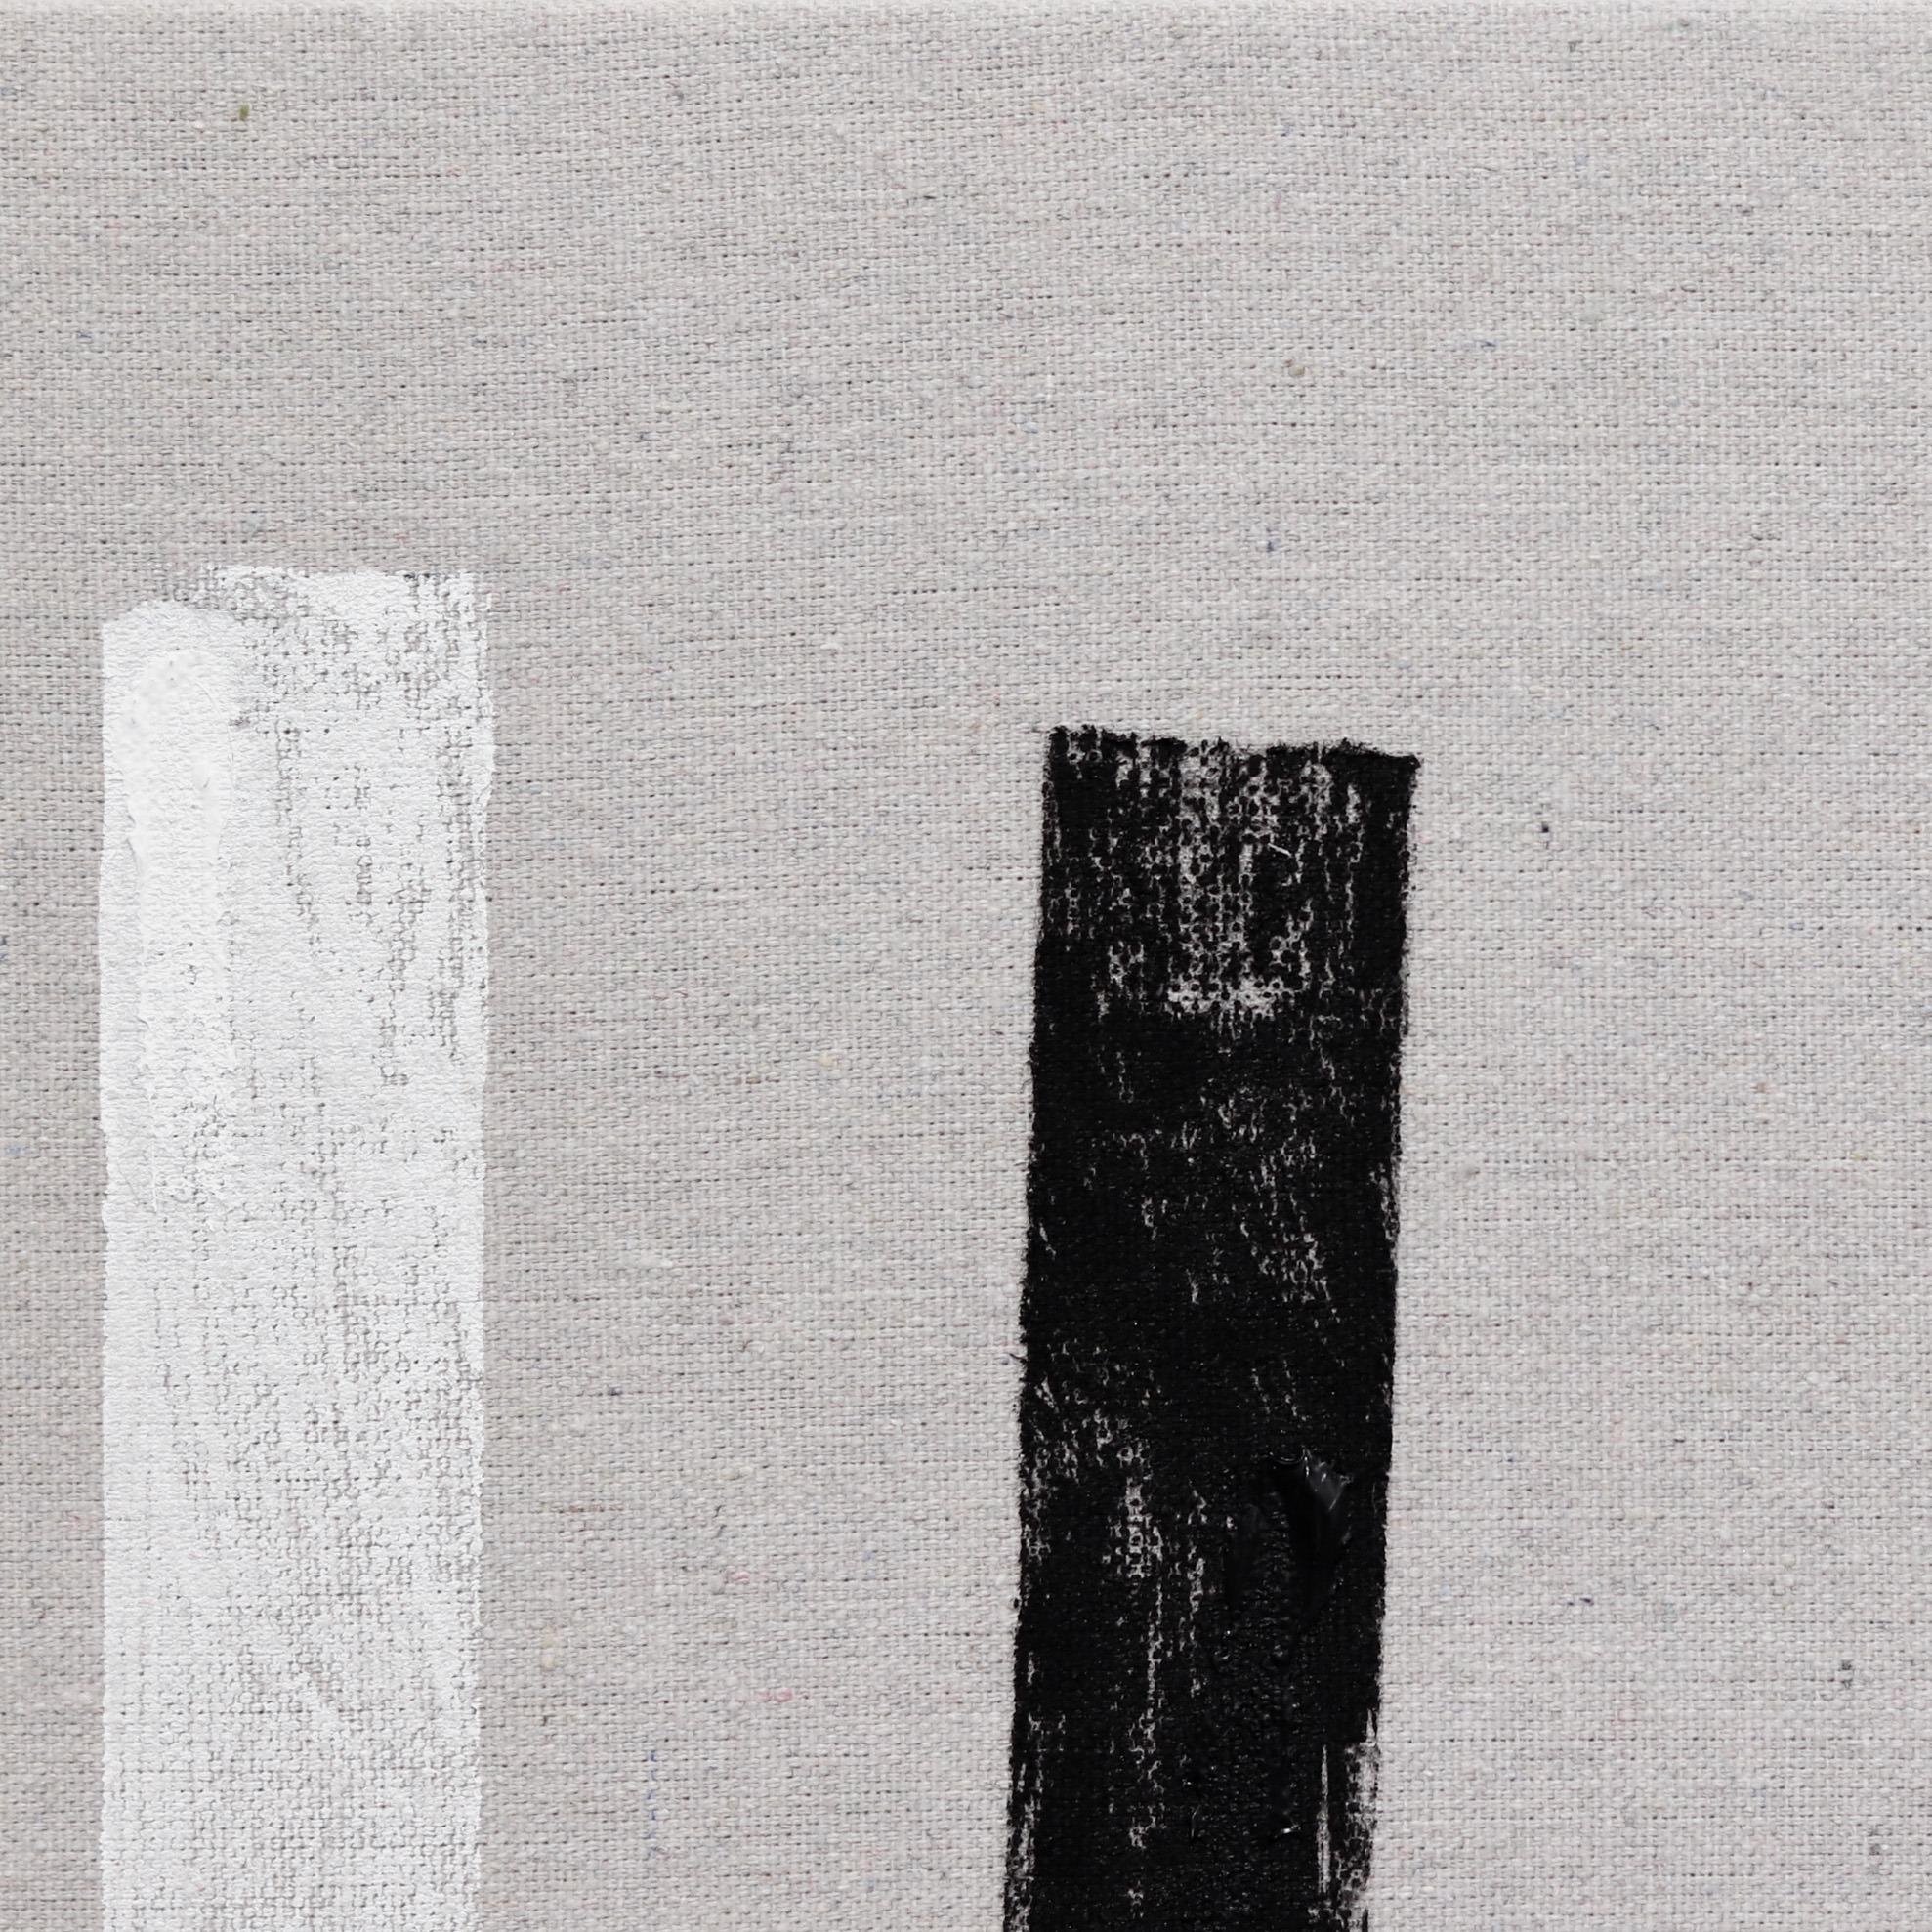 Len Klikunas malt minimalistische Kunstwerke, um die erlebte Realität durch visuelle Wahrnehmung zu verändern. Die Serie Blocks ist eine Mischung aus Kunst und Architektur und bewegt sich zwischen Malerei und Skulptur. Es verwendet shizen (自然): das